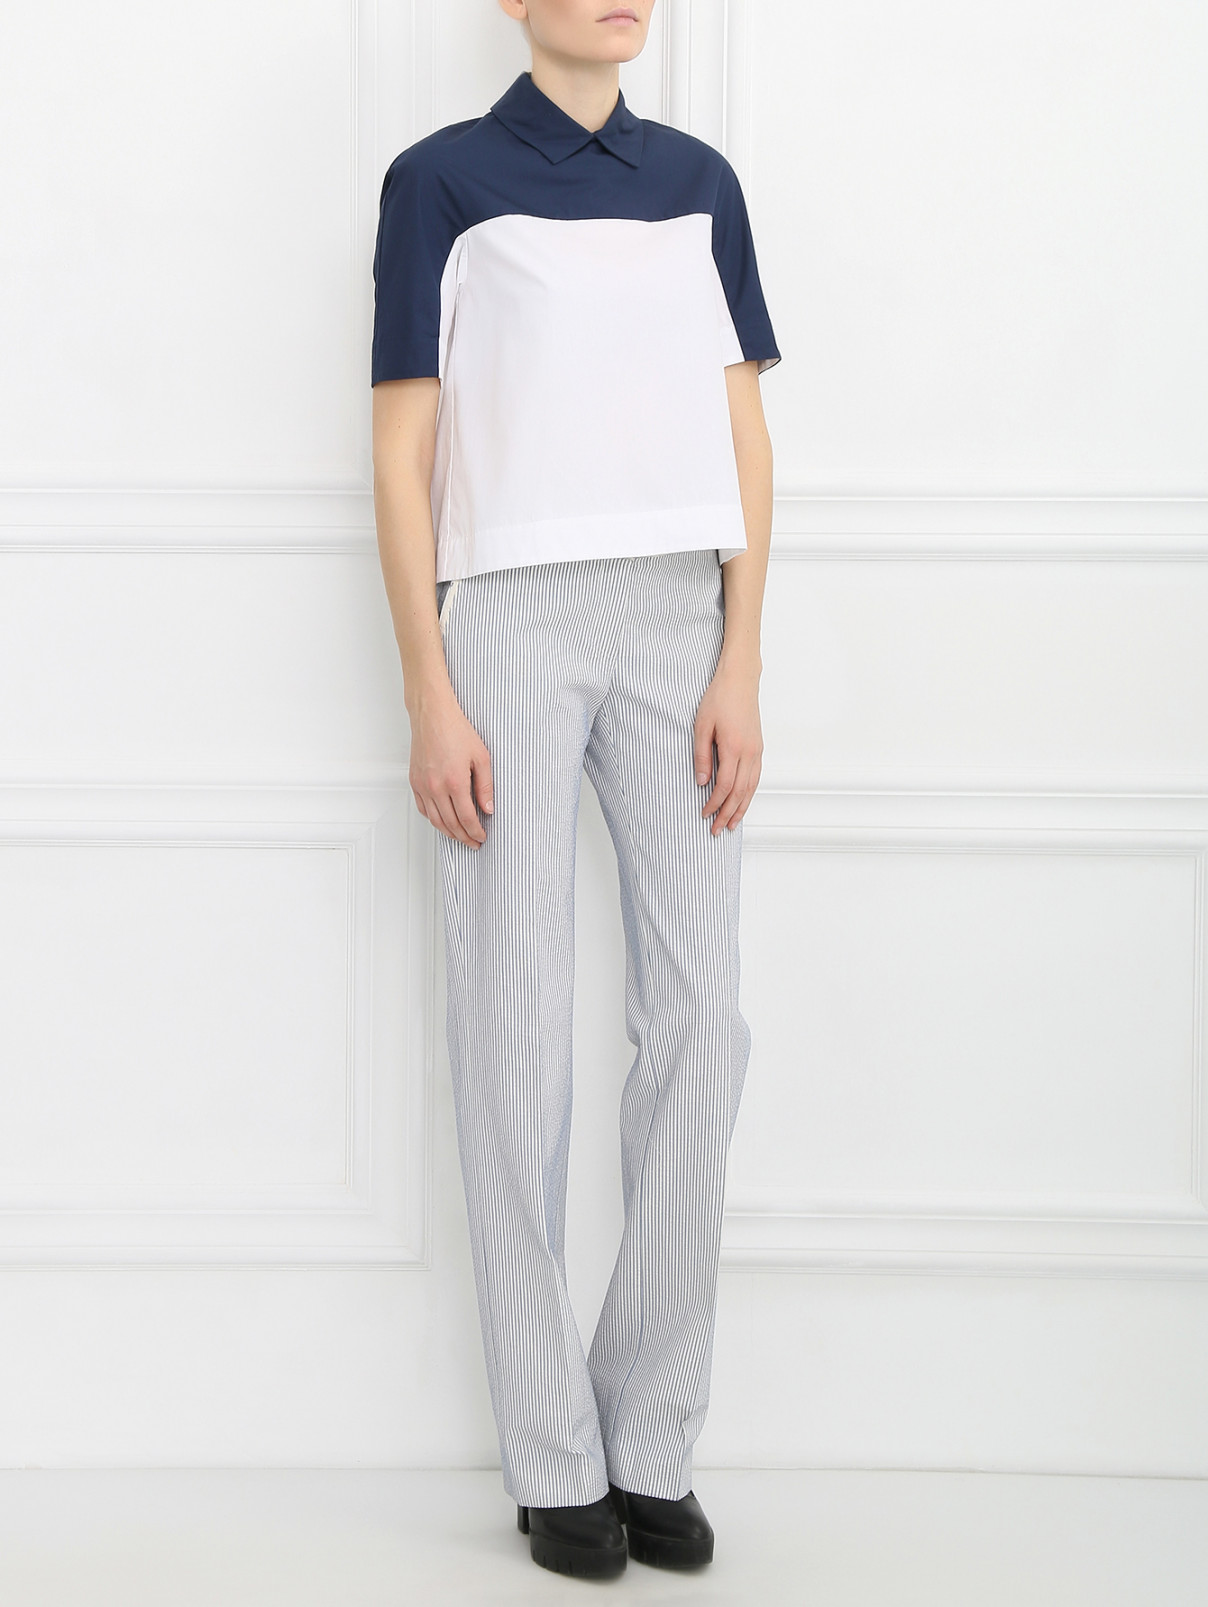 Блуза из хлопка с контрастной вставкой Isola Marras  –  Модель Общий вид  – Цвет:  Белый